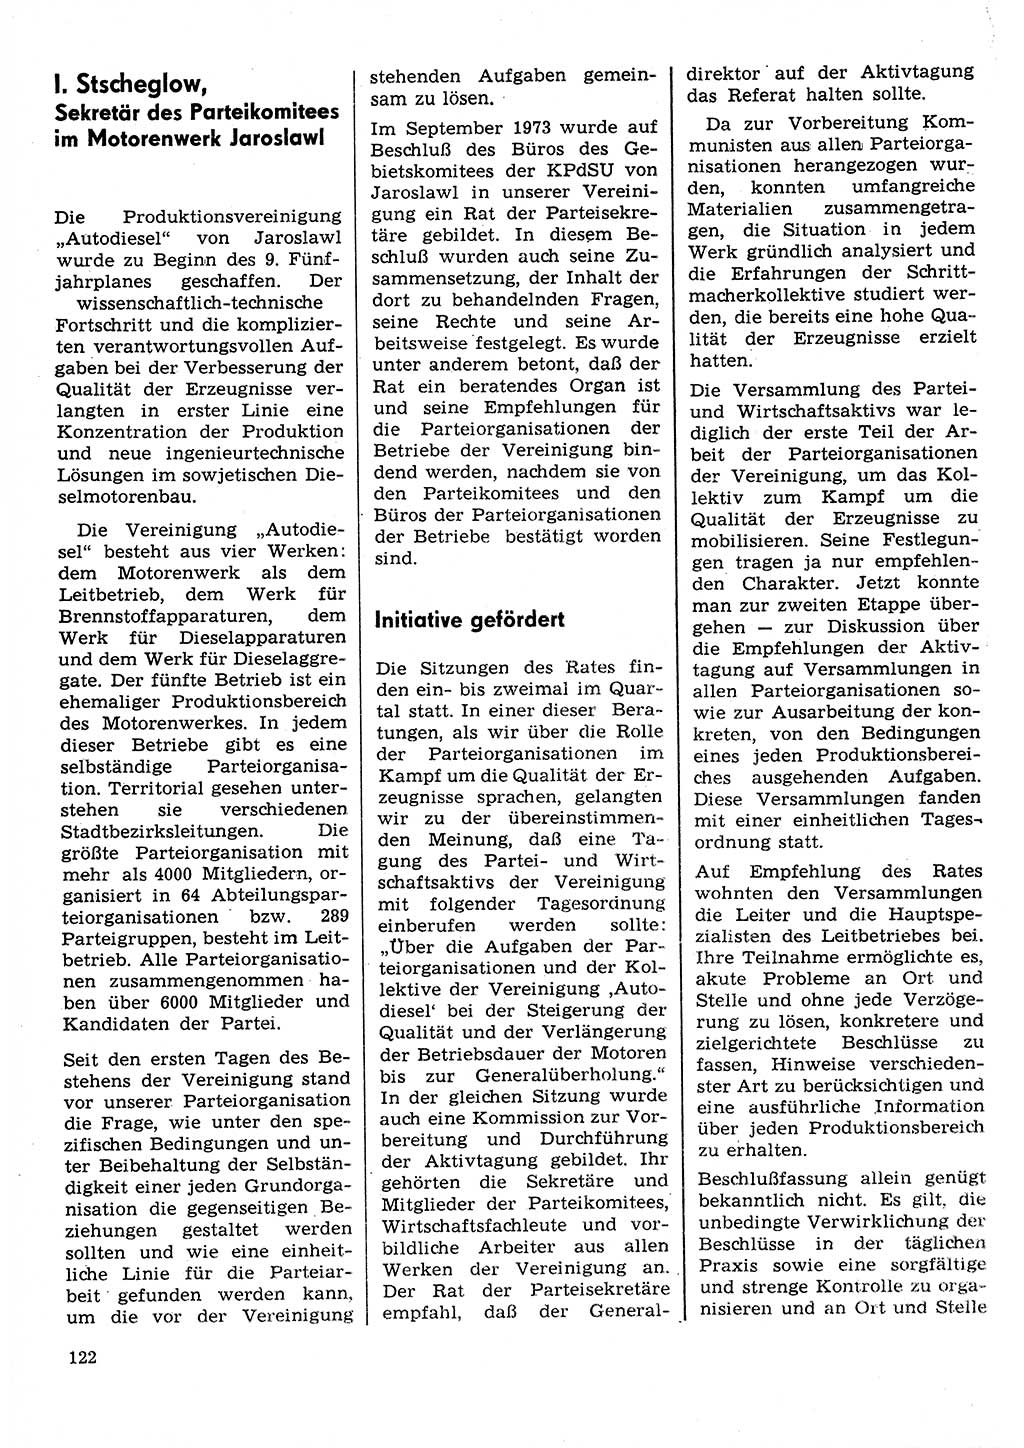 Neuer Weg (NW), Organ des Zentralkomitees (ZK) der SED (Sozialistische Einheitspartei Deutschlands) für Fragen des Parteilebens, 31. Jahrgang [Deutsche Demokratische Republik (DDR)] 1976, Seite 122 (NW ZK SED DDR 1976, S. 122)